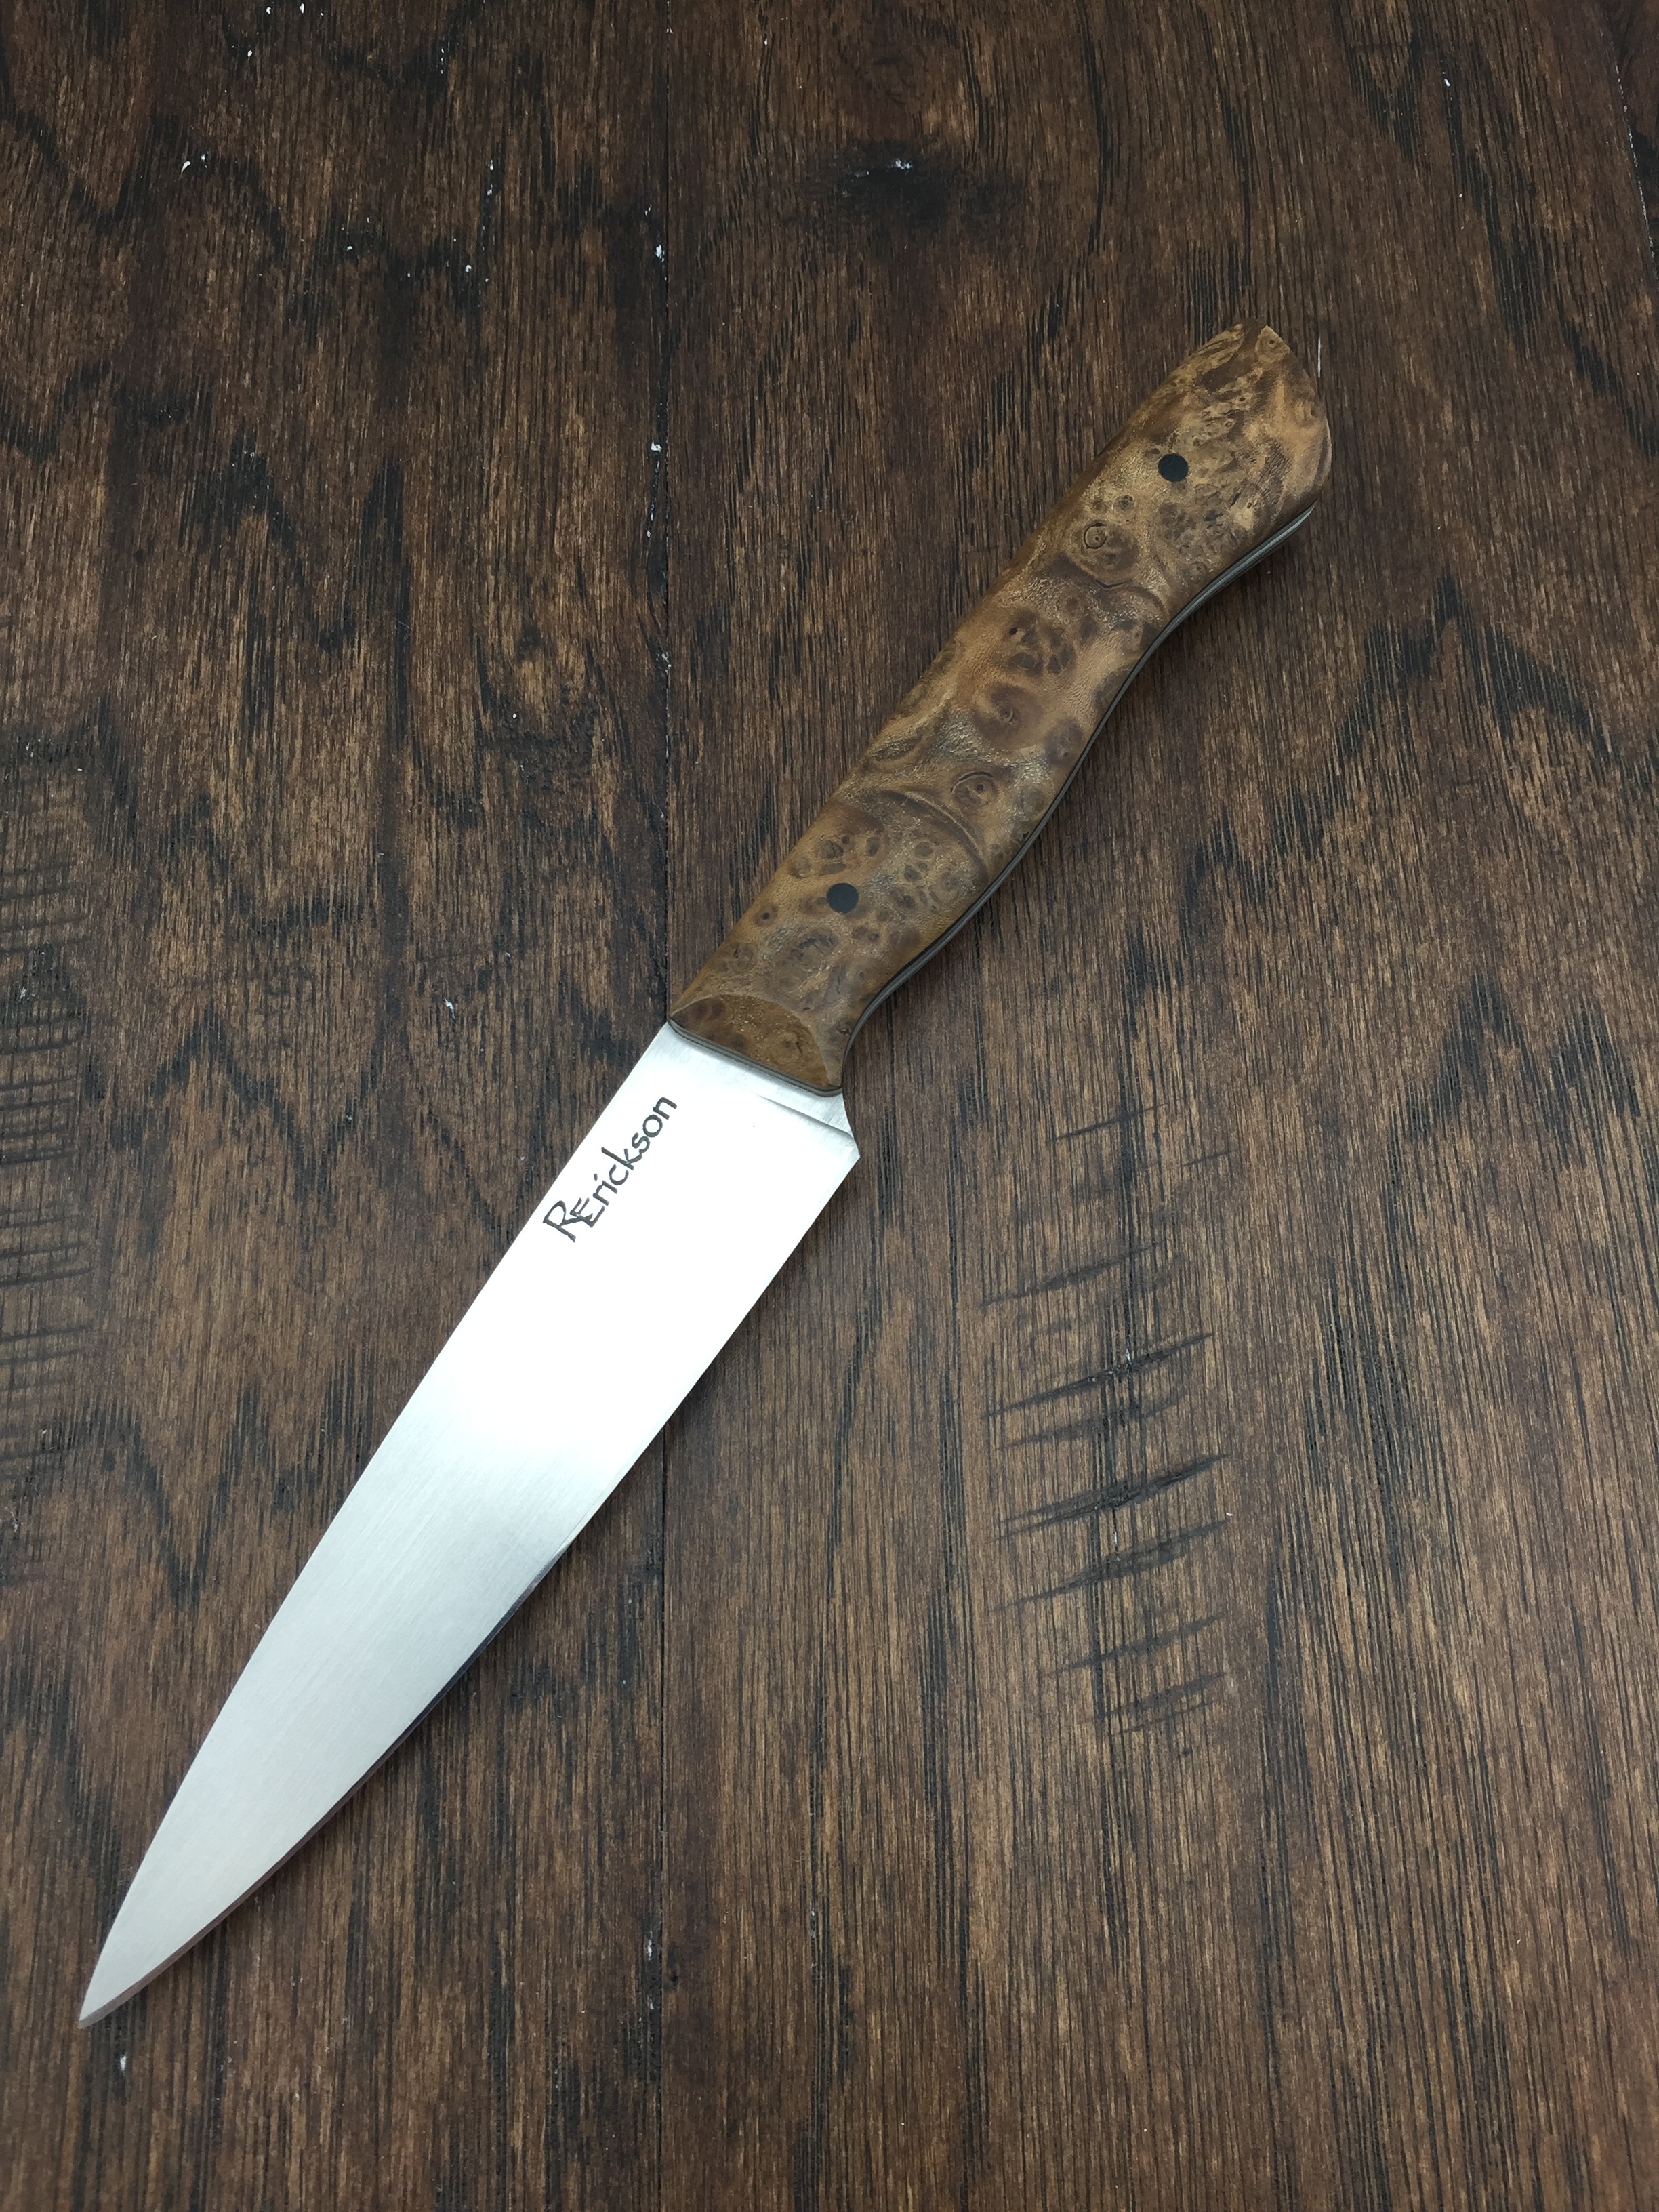 Olive Wood Burl paring knife